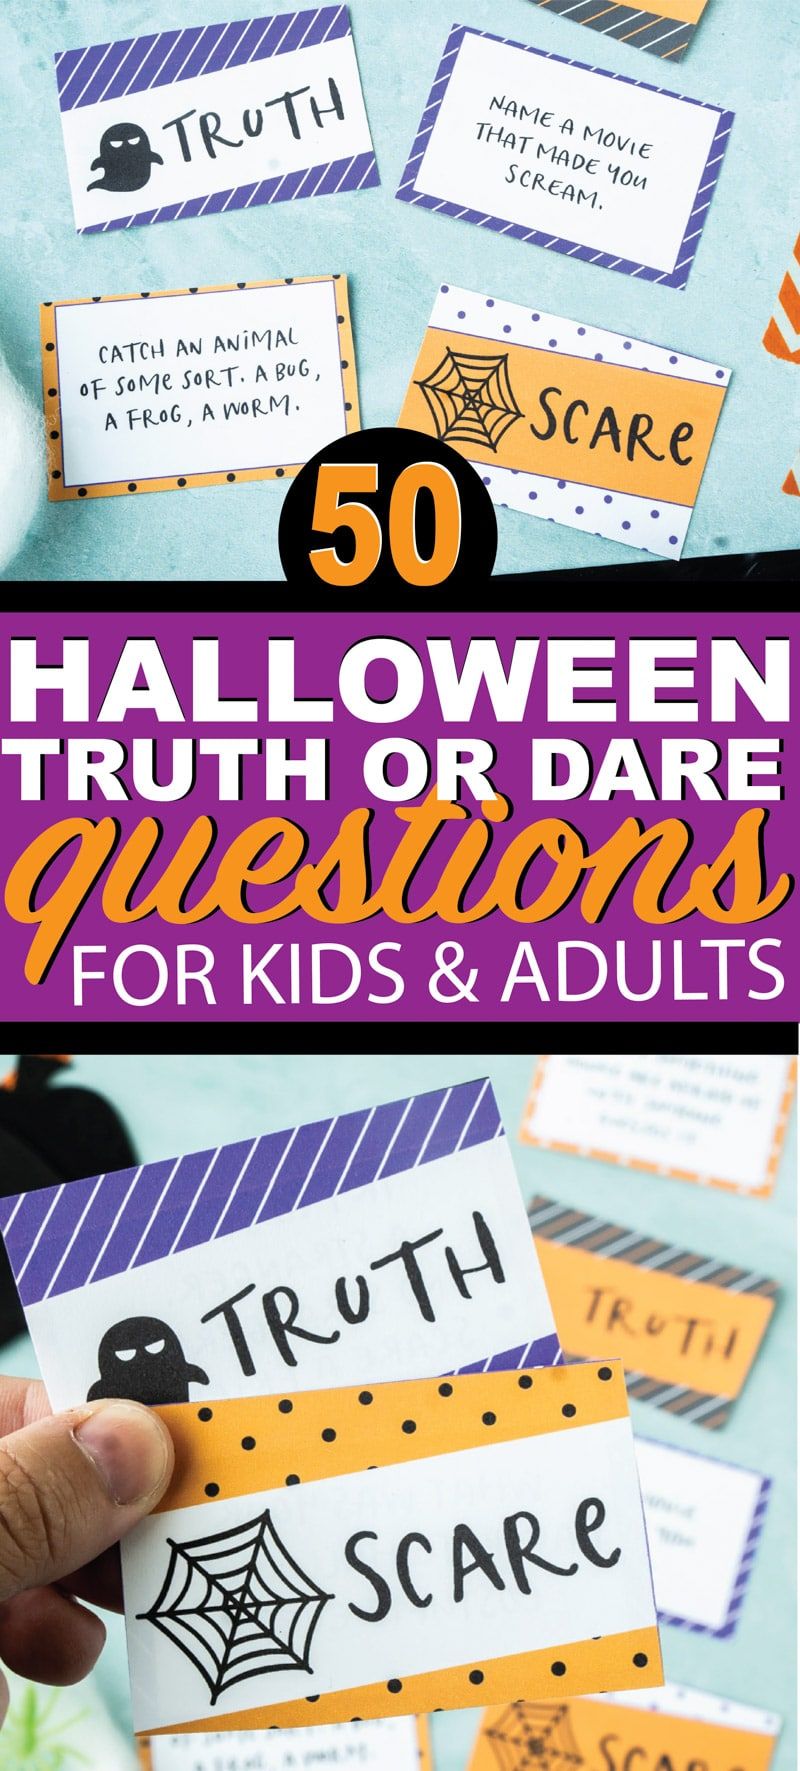 Lõbus halloween inspireeritud tõde või julge küsimusi! Ideaalne teismelistele, lastele, tüdrukutele ja poistele! Kõigile meeldib see Halloweeni tõde või klassikalise tõe või julge mängu hirmutav versioon! Ja boonus - kõik tõde või julged küsimused on puhtad. Ideaalne mõneks Halloweeni peremõnuks!